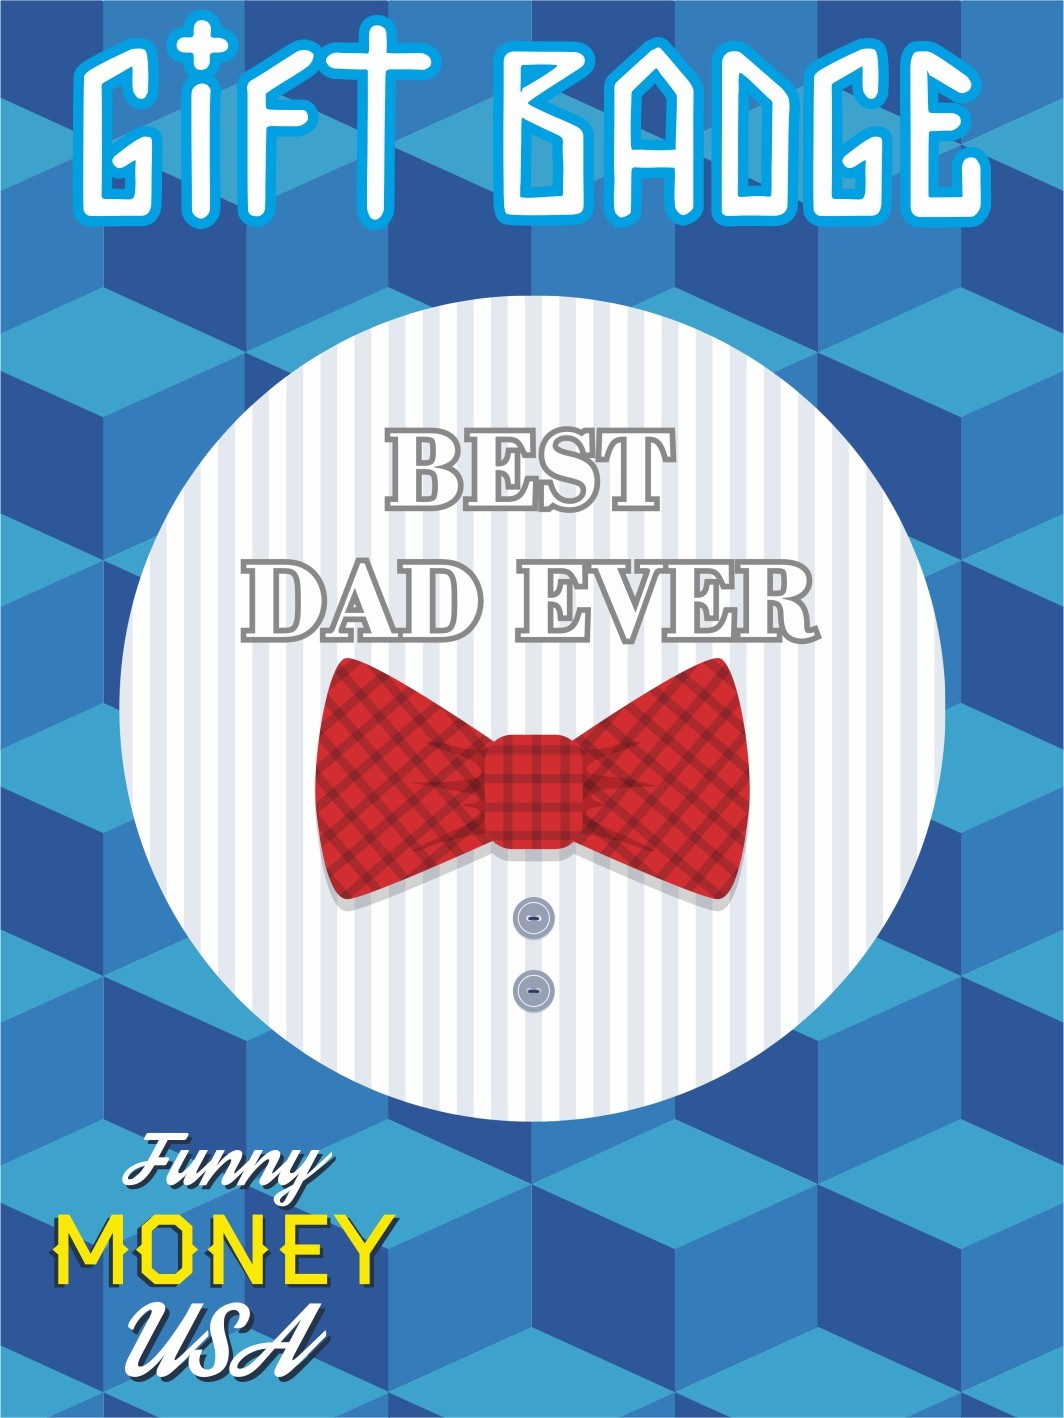 Gift badges "Best dad ever"